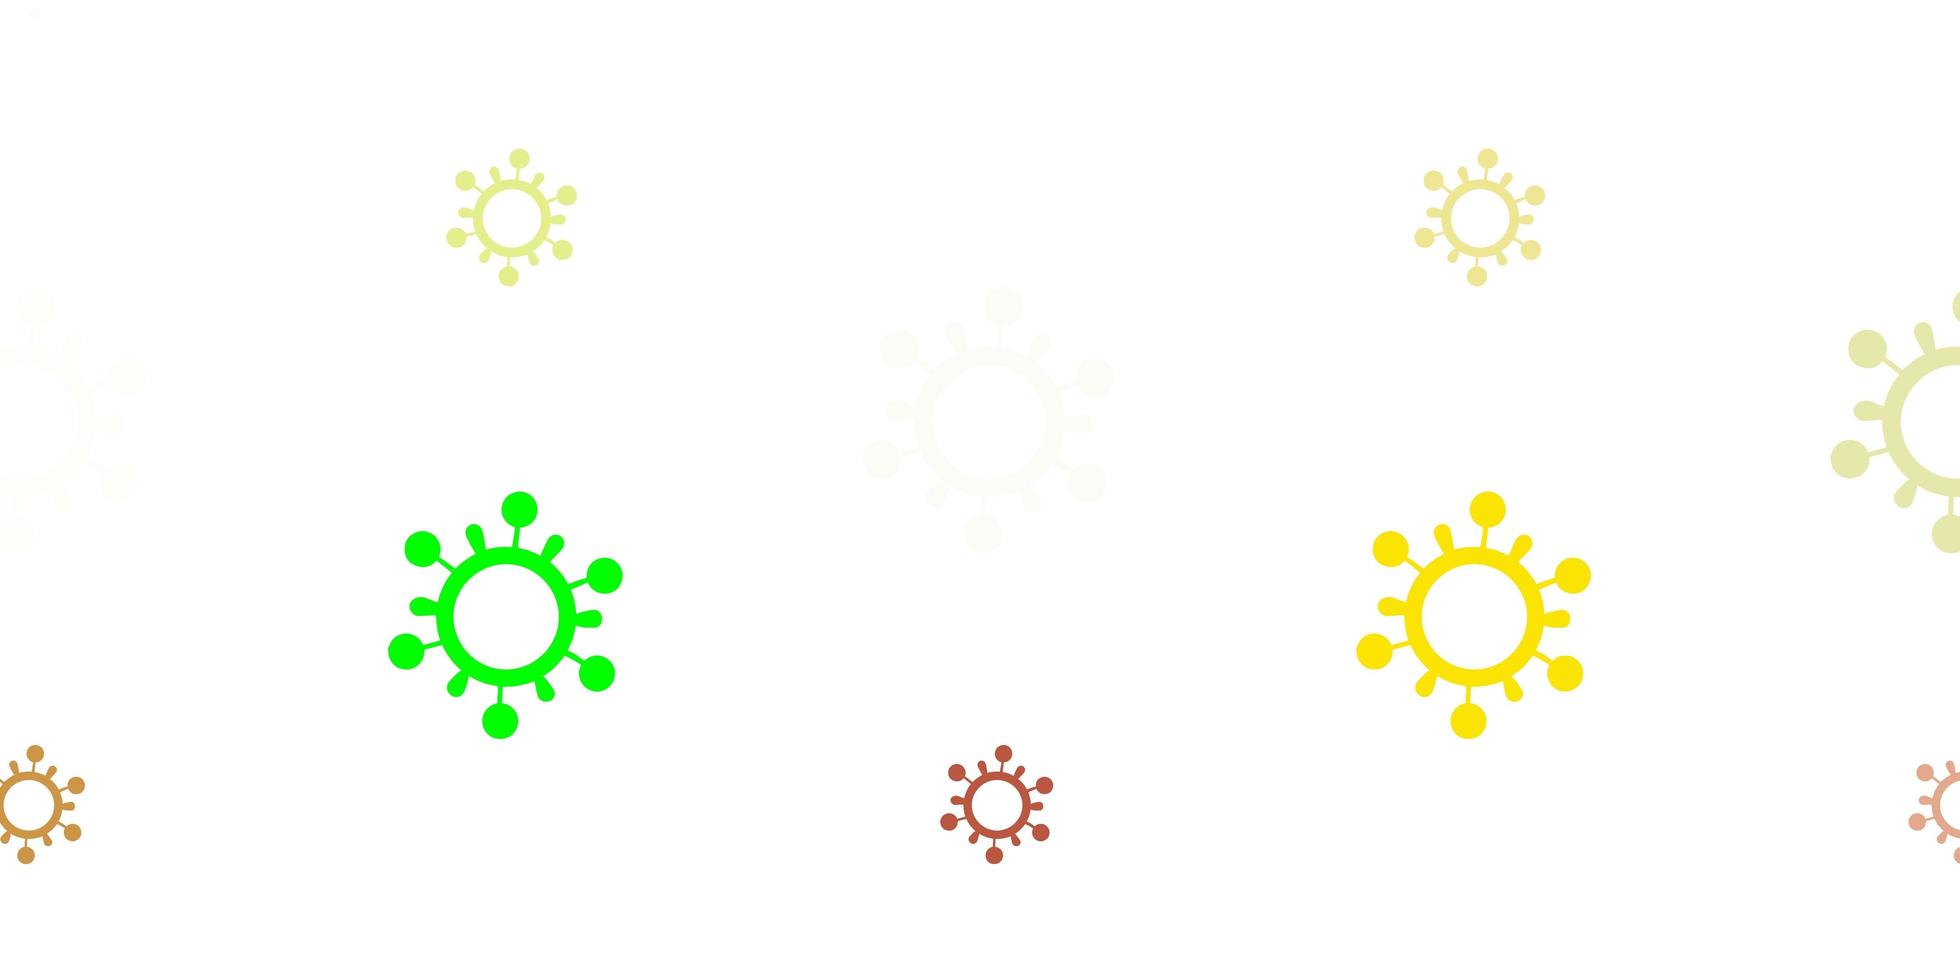 sfondo vettoriale verde chiaro, giallo con simboli di virus.